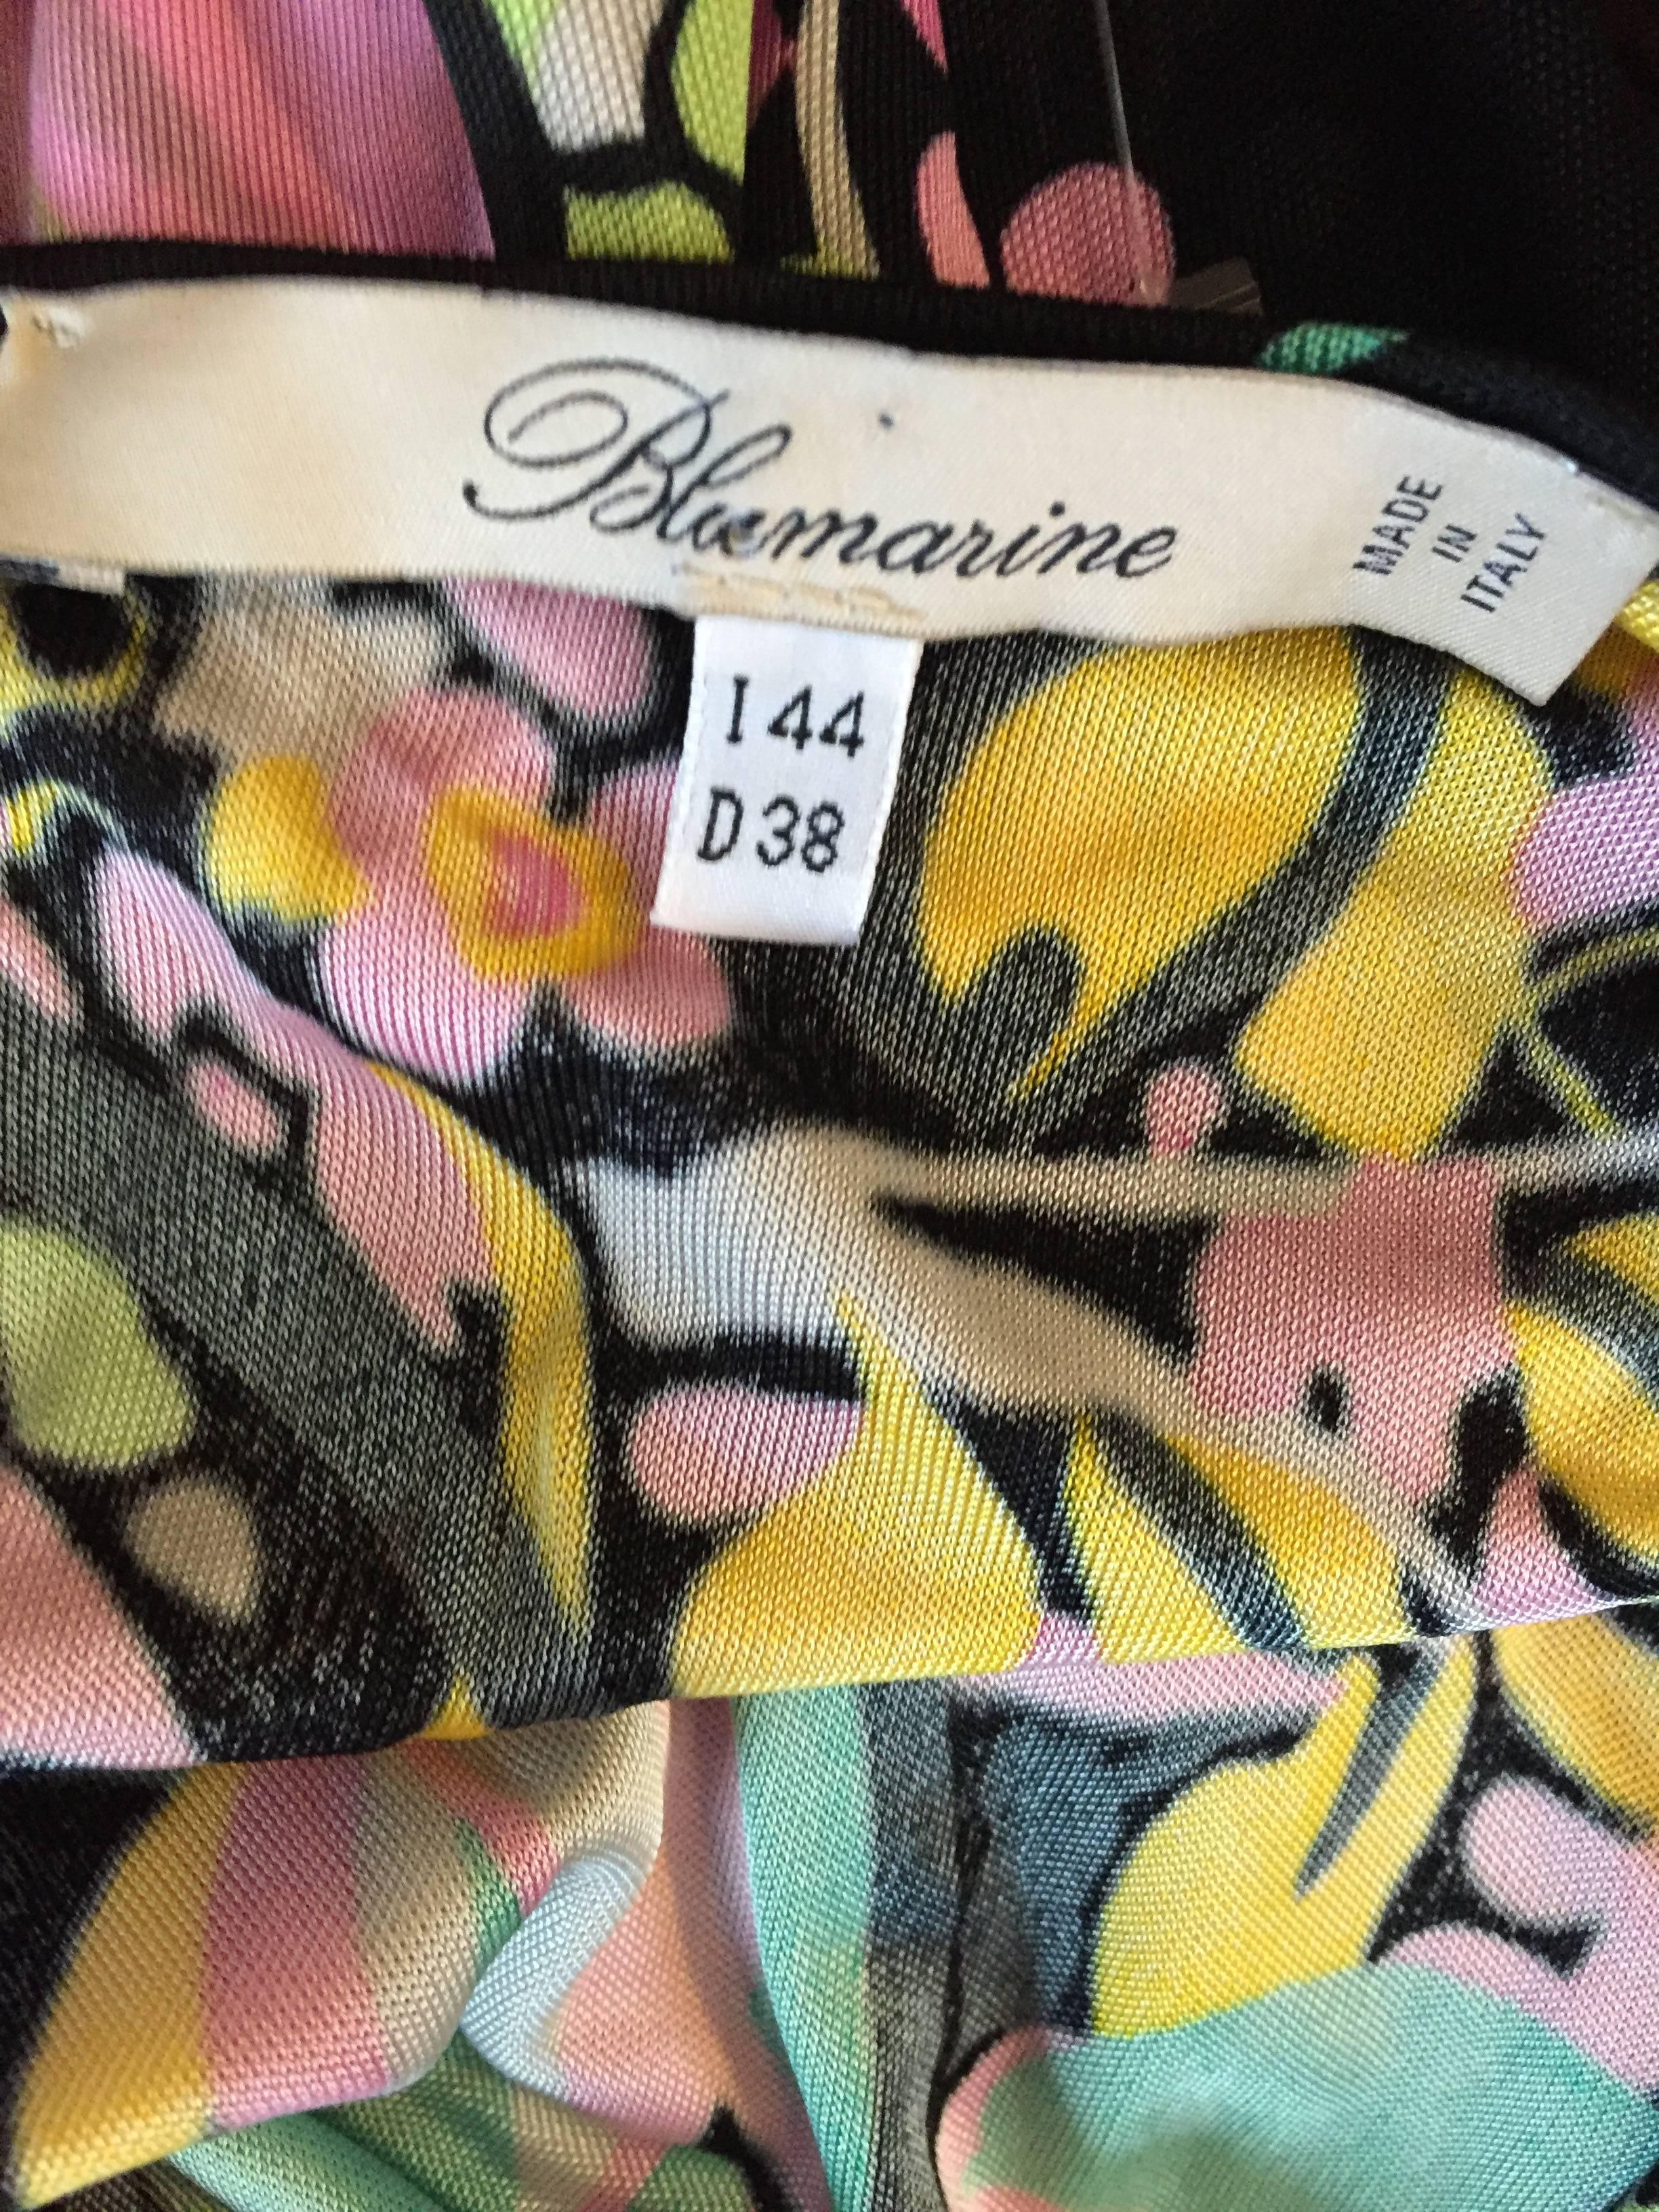 Beautiful Blumarine by Anna Molinari Black Rayon Jersey 1930s Style Dress + Belt For Sale 5